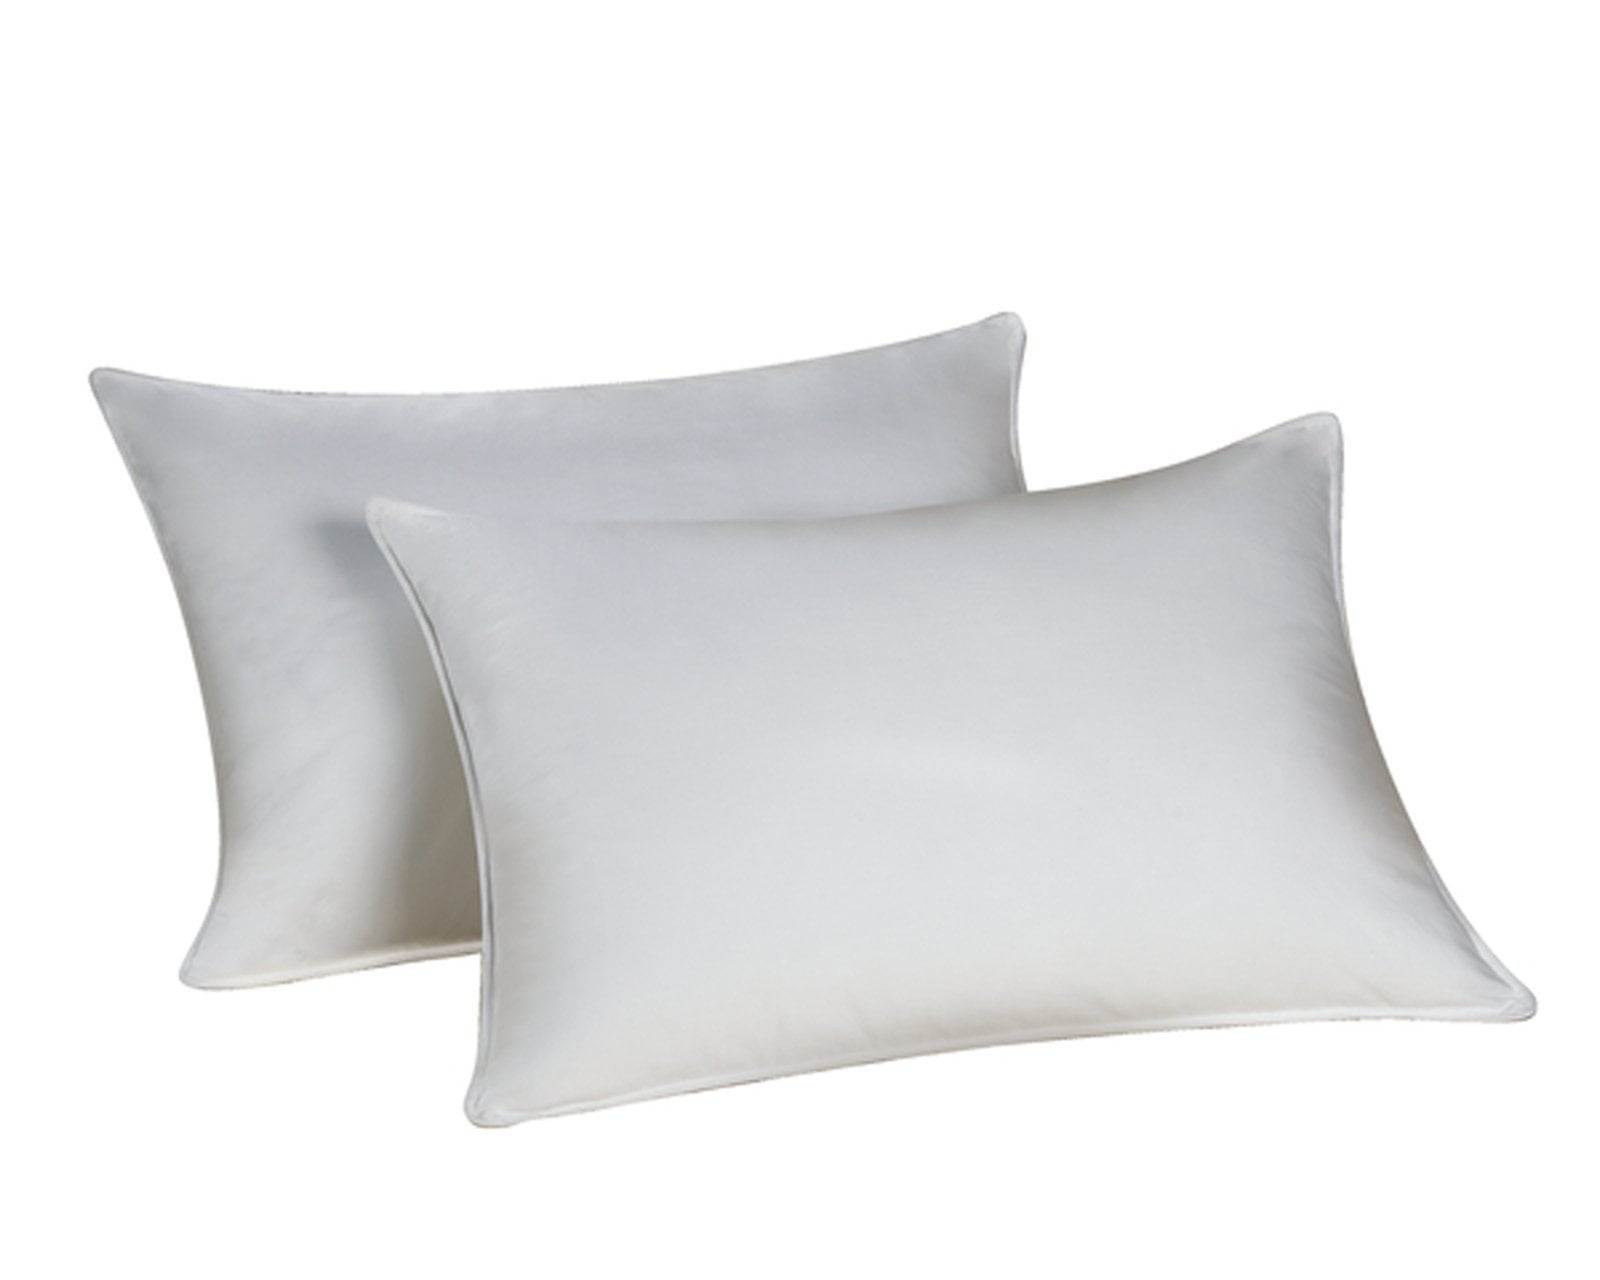 Envirosleep Dream Surrender Firm King Pillow set 2 Pillows found at Marriott 